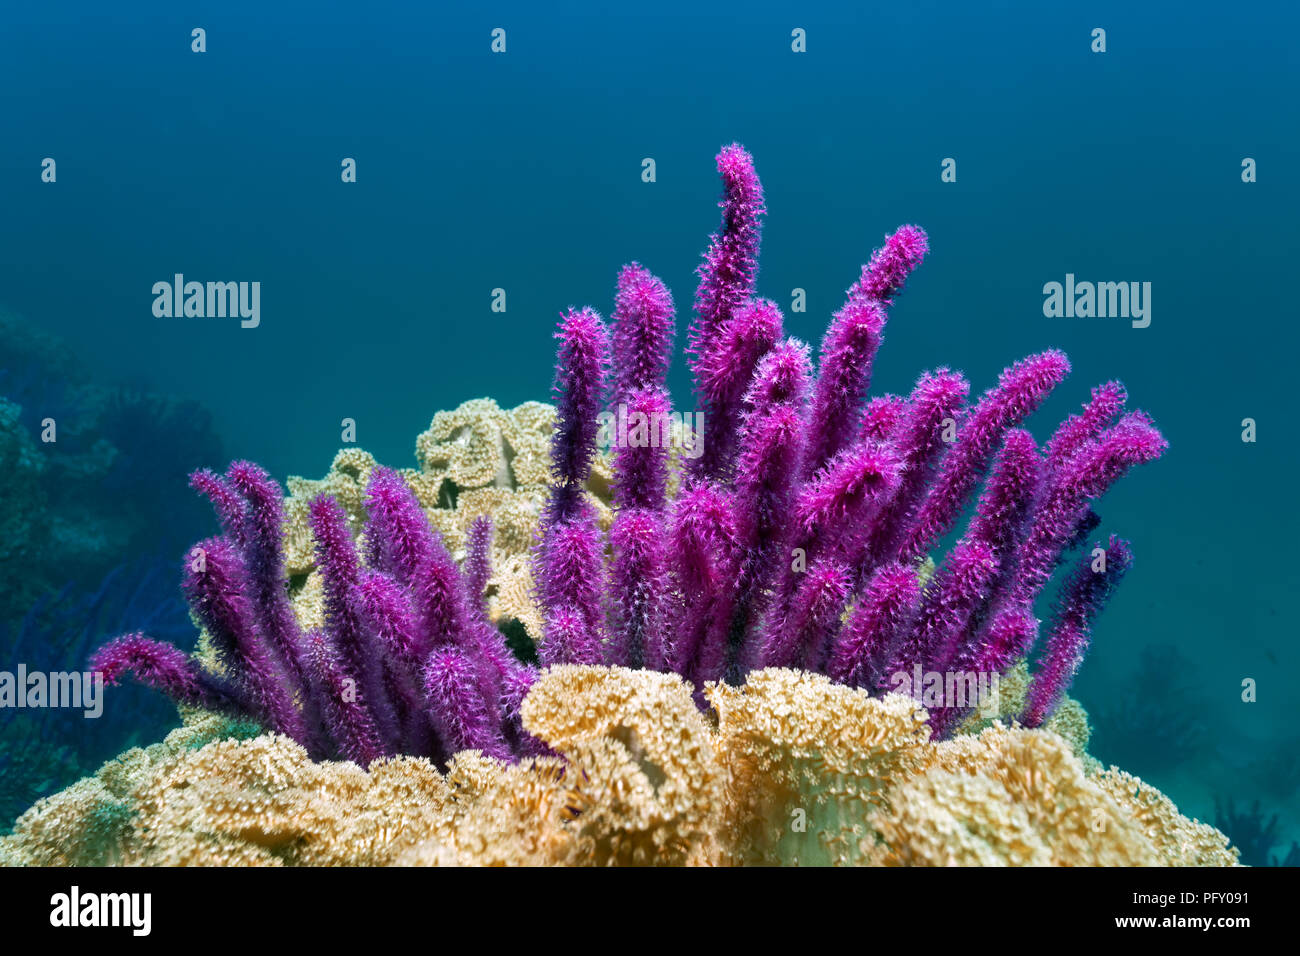 Mer Rouge fouet (Ellisella sp.), encadré par les coraux cuir (Alcyoniidae), la réserve naturelle des îles Daymaniyat Khawr, Suwasi Banque D'Images